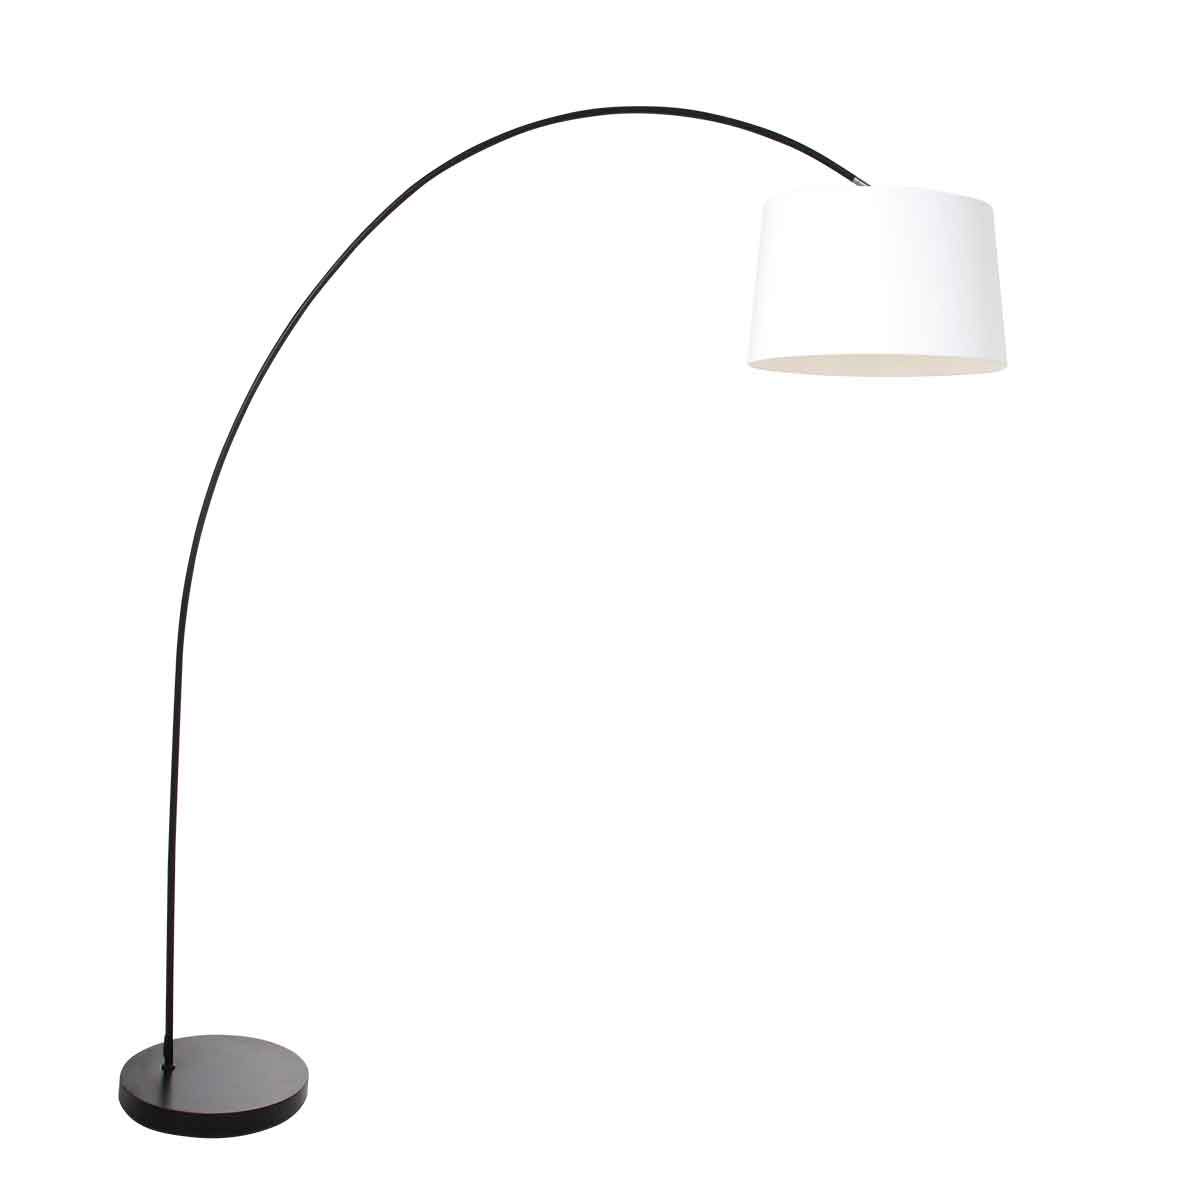 booglamp-solva-3903zw-met-een-wit-linnen-lampenkap-vloerlamp-mexlite-solva-wit-en-zwart-3903zw